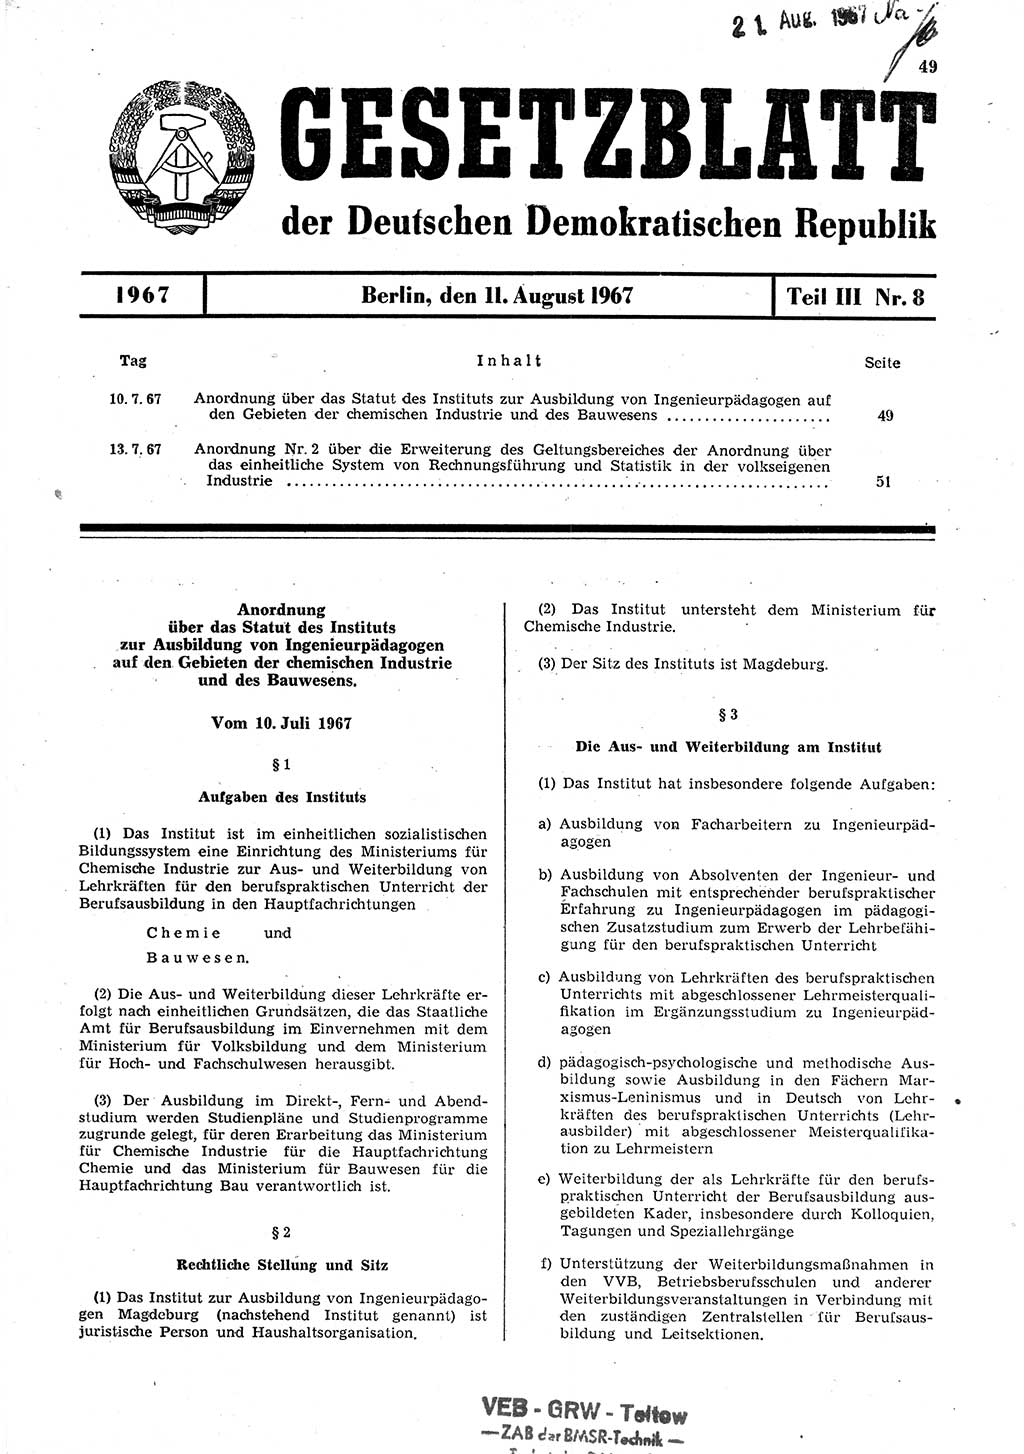 Gesetzblatt (GBl.) der Deutschen Demokratischen Republik (DDR) Teil ⅠⅠⅠ 1967, Seite 49 (GBl. DDR ⅠⅠⅠ 1967, S. 49)